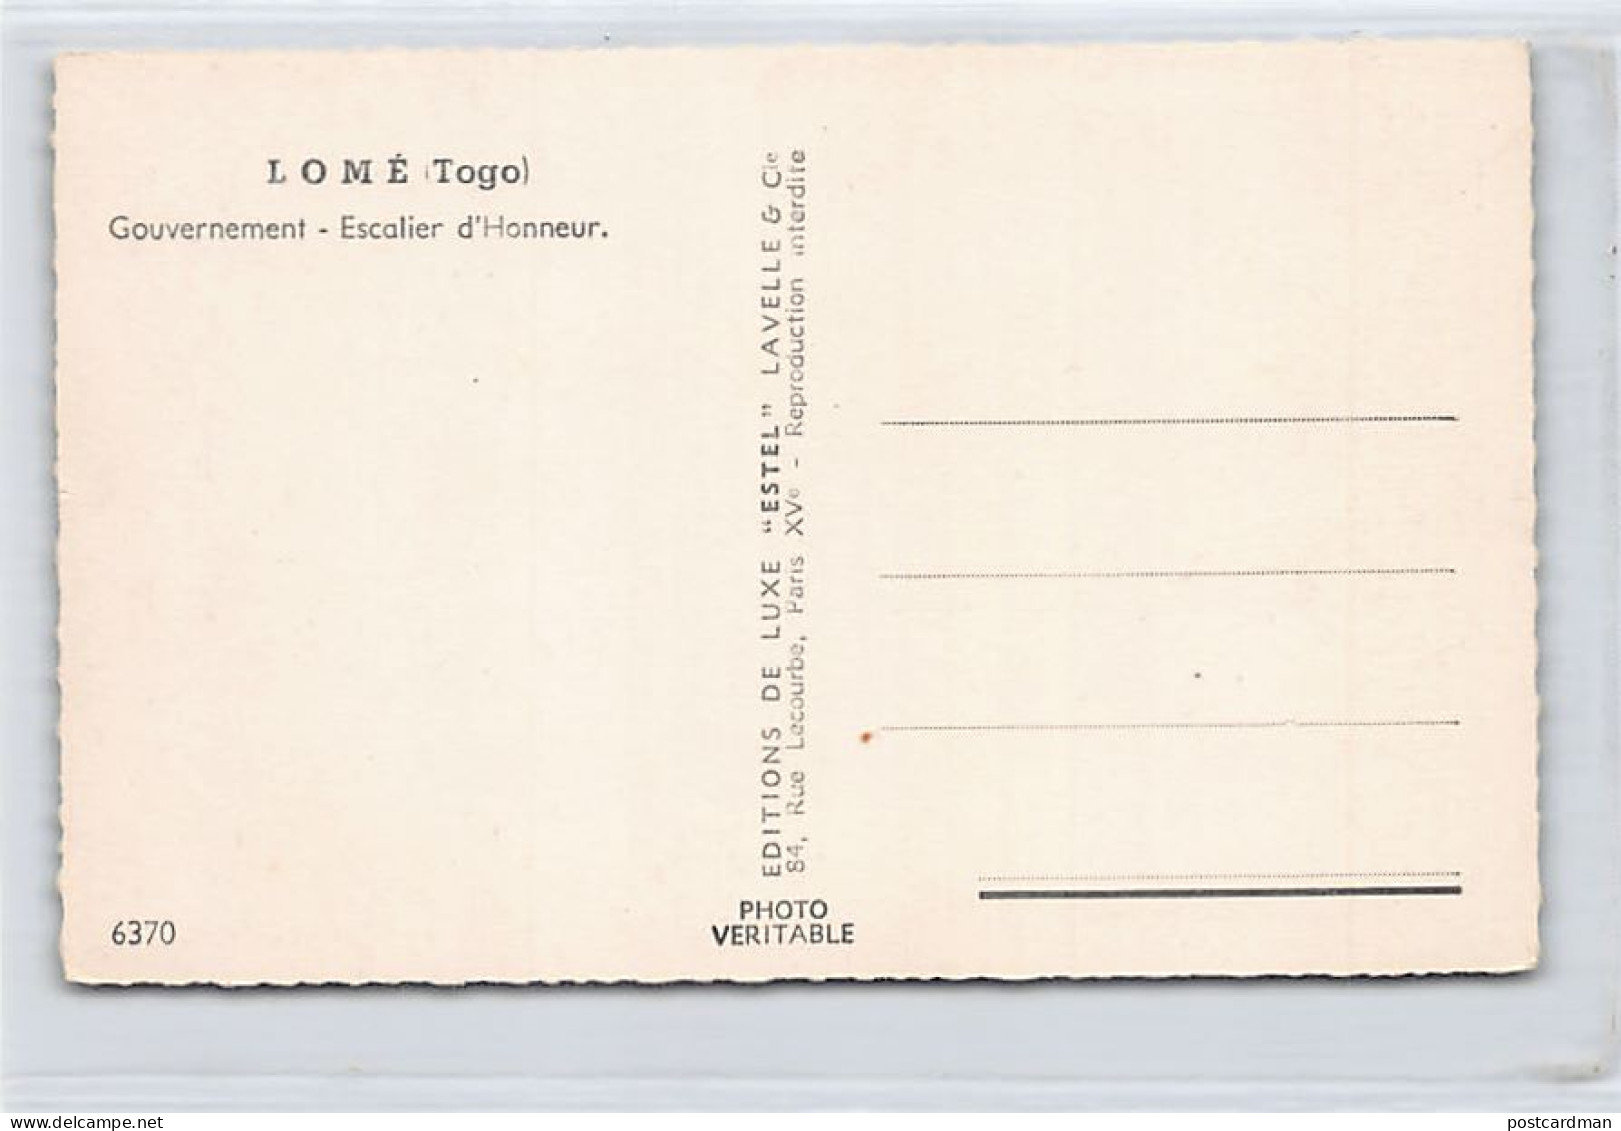 Togo - LOMÉ - Gouvernement - Escalier D'honneur - Ed. Lavelle & Cie 6370 - Togo